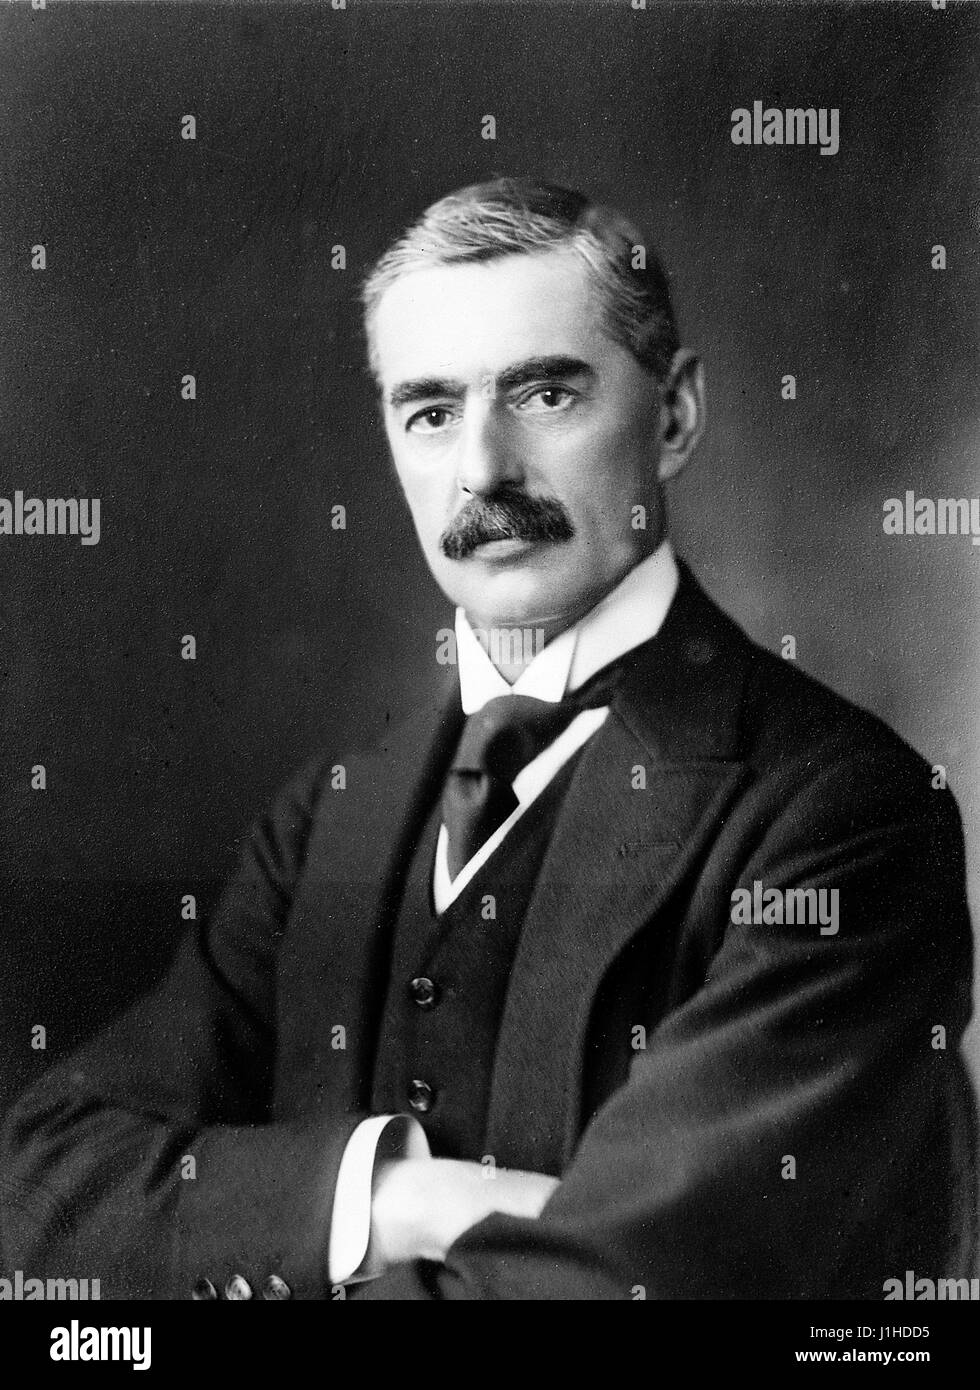 Former Prime Minister of United Kingdom Neville Chamberlain, Right Honourable Neville Chamberlain. Stock Photo